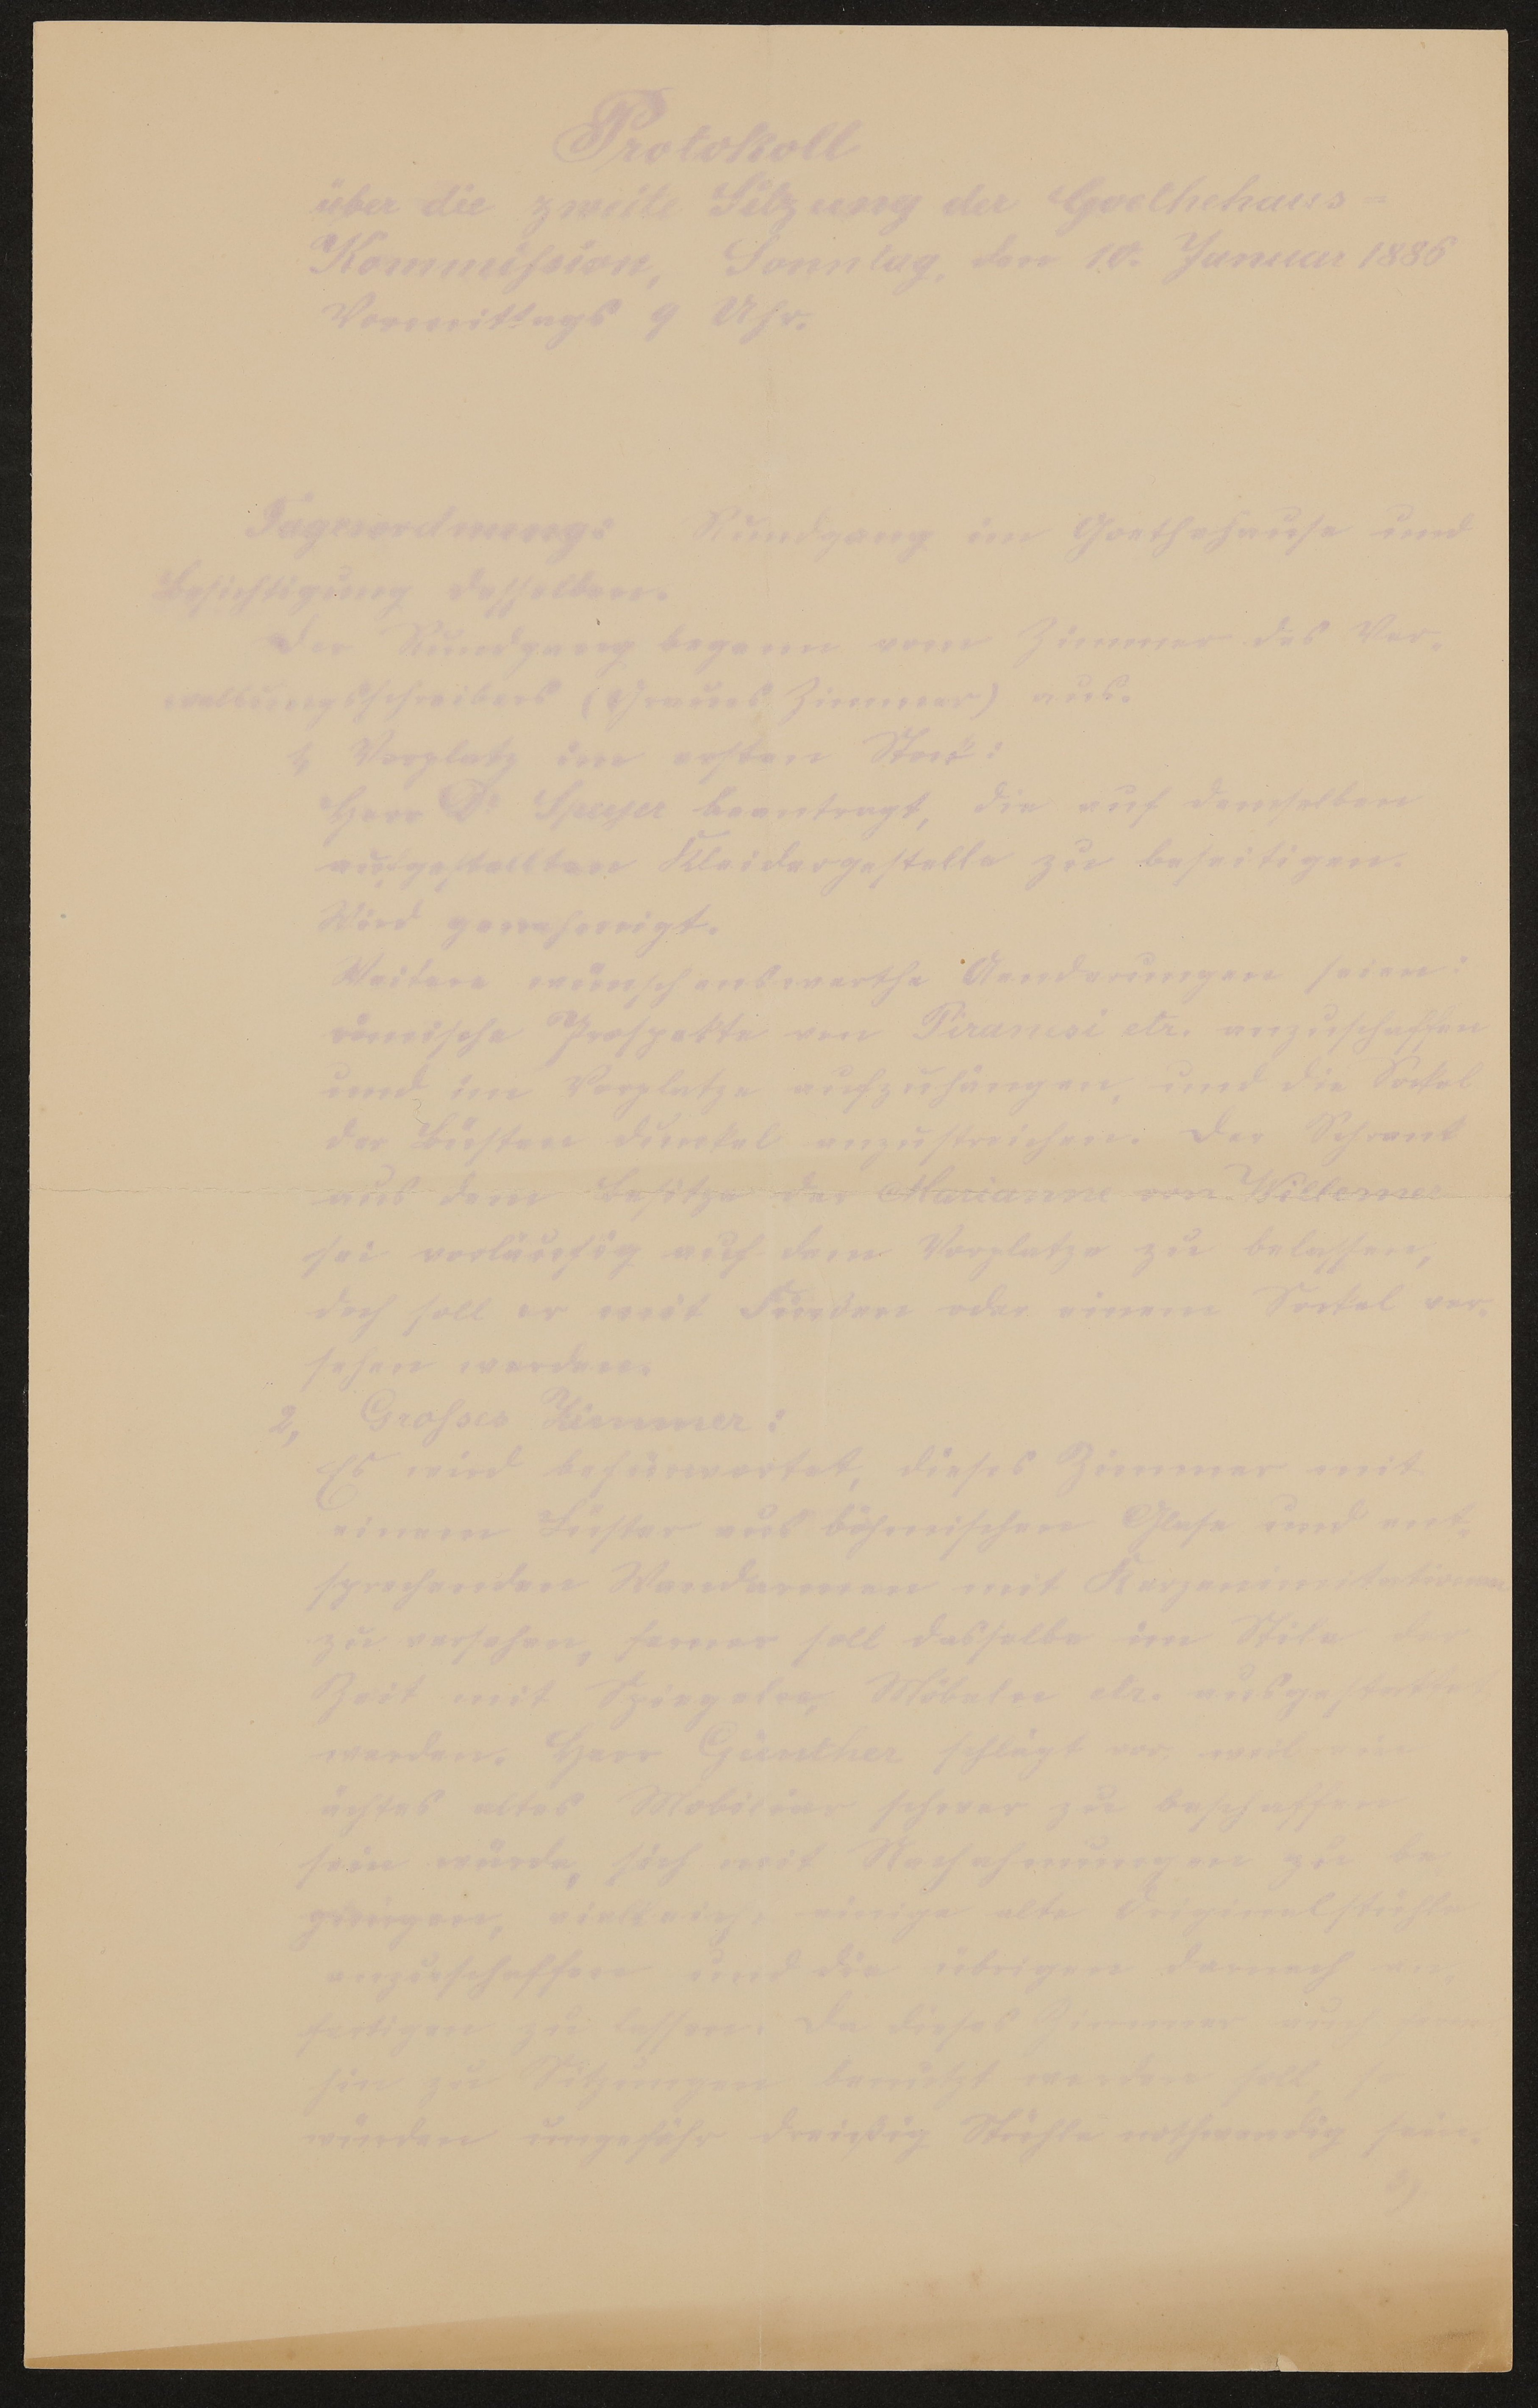 Protokoll über die zweite Sitzung der Goethehaus-Kommission am 10. Januar 1886 (Freies Deutsches Hochstift / Frankfurter Goethe-Museum Public Domain Mark)